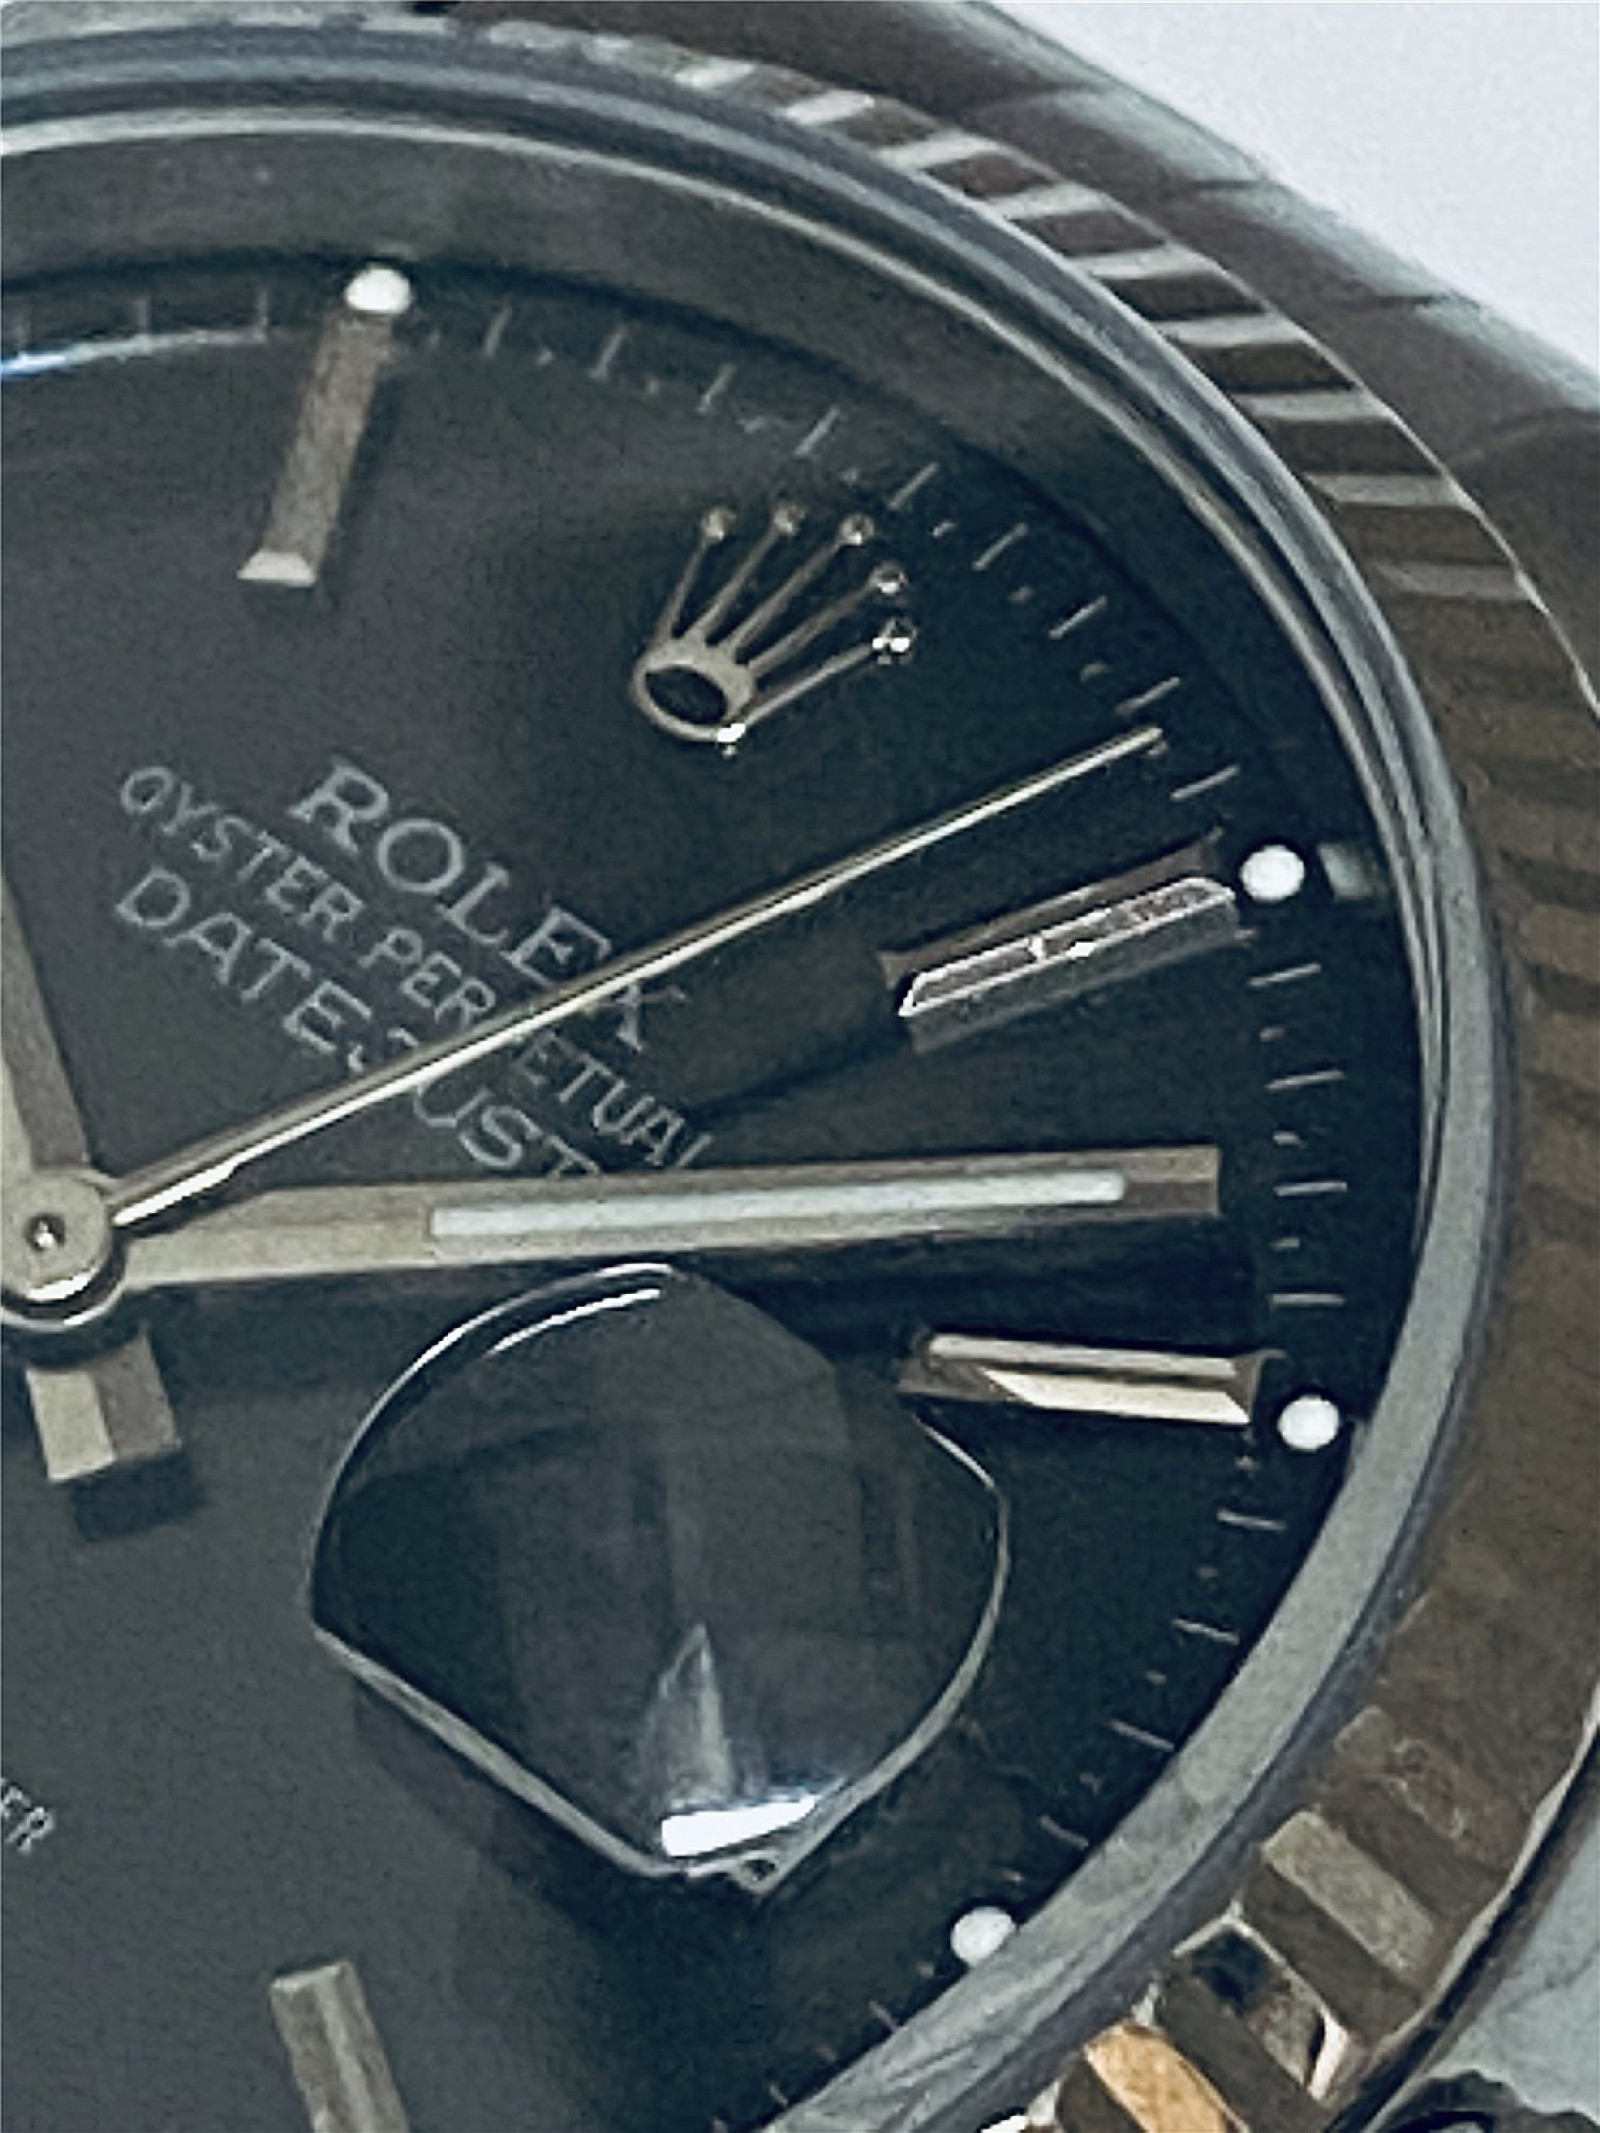 2004 Rolex Datejust Ref. 16234